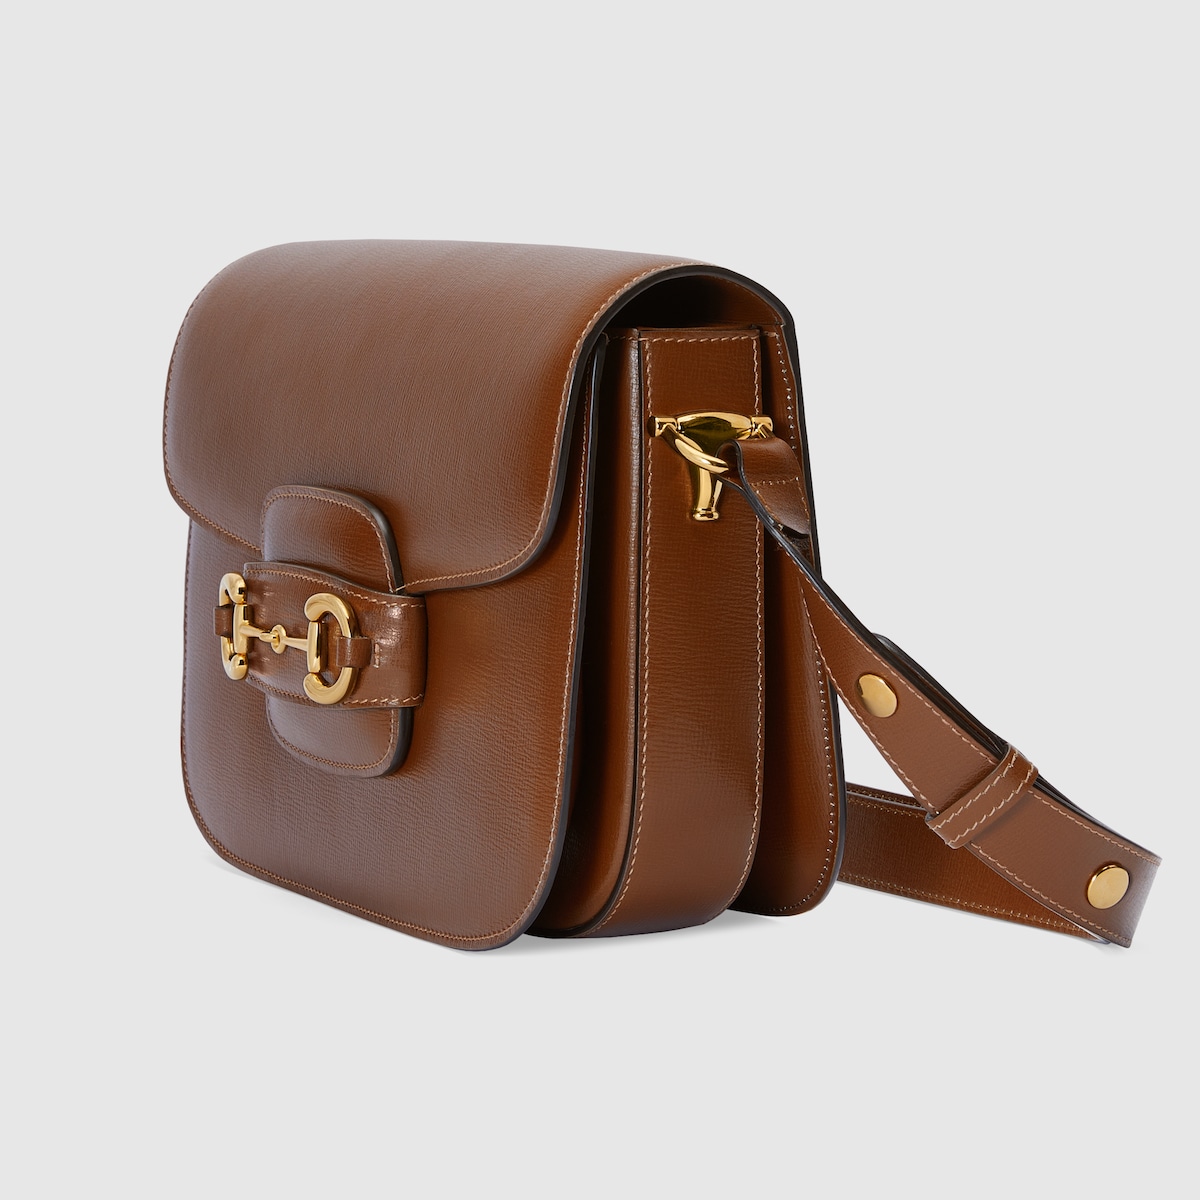 GUCCI HORSEBIT 1955 SHOULDER BAG brown leather